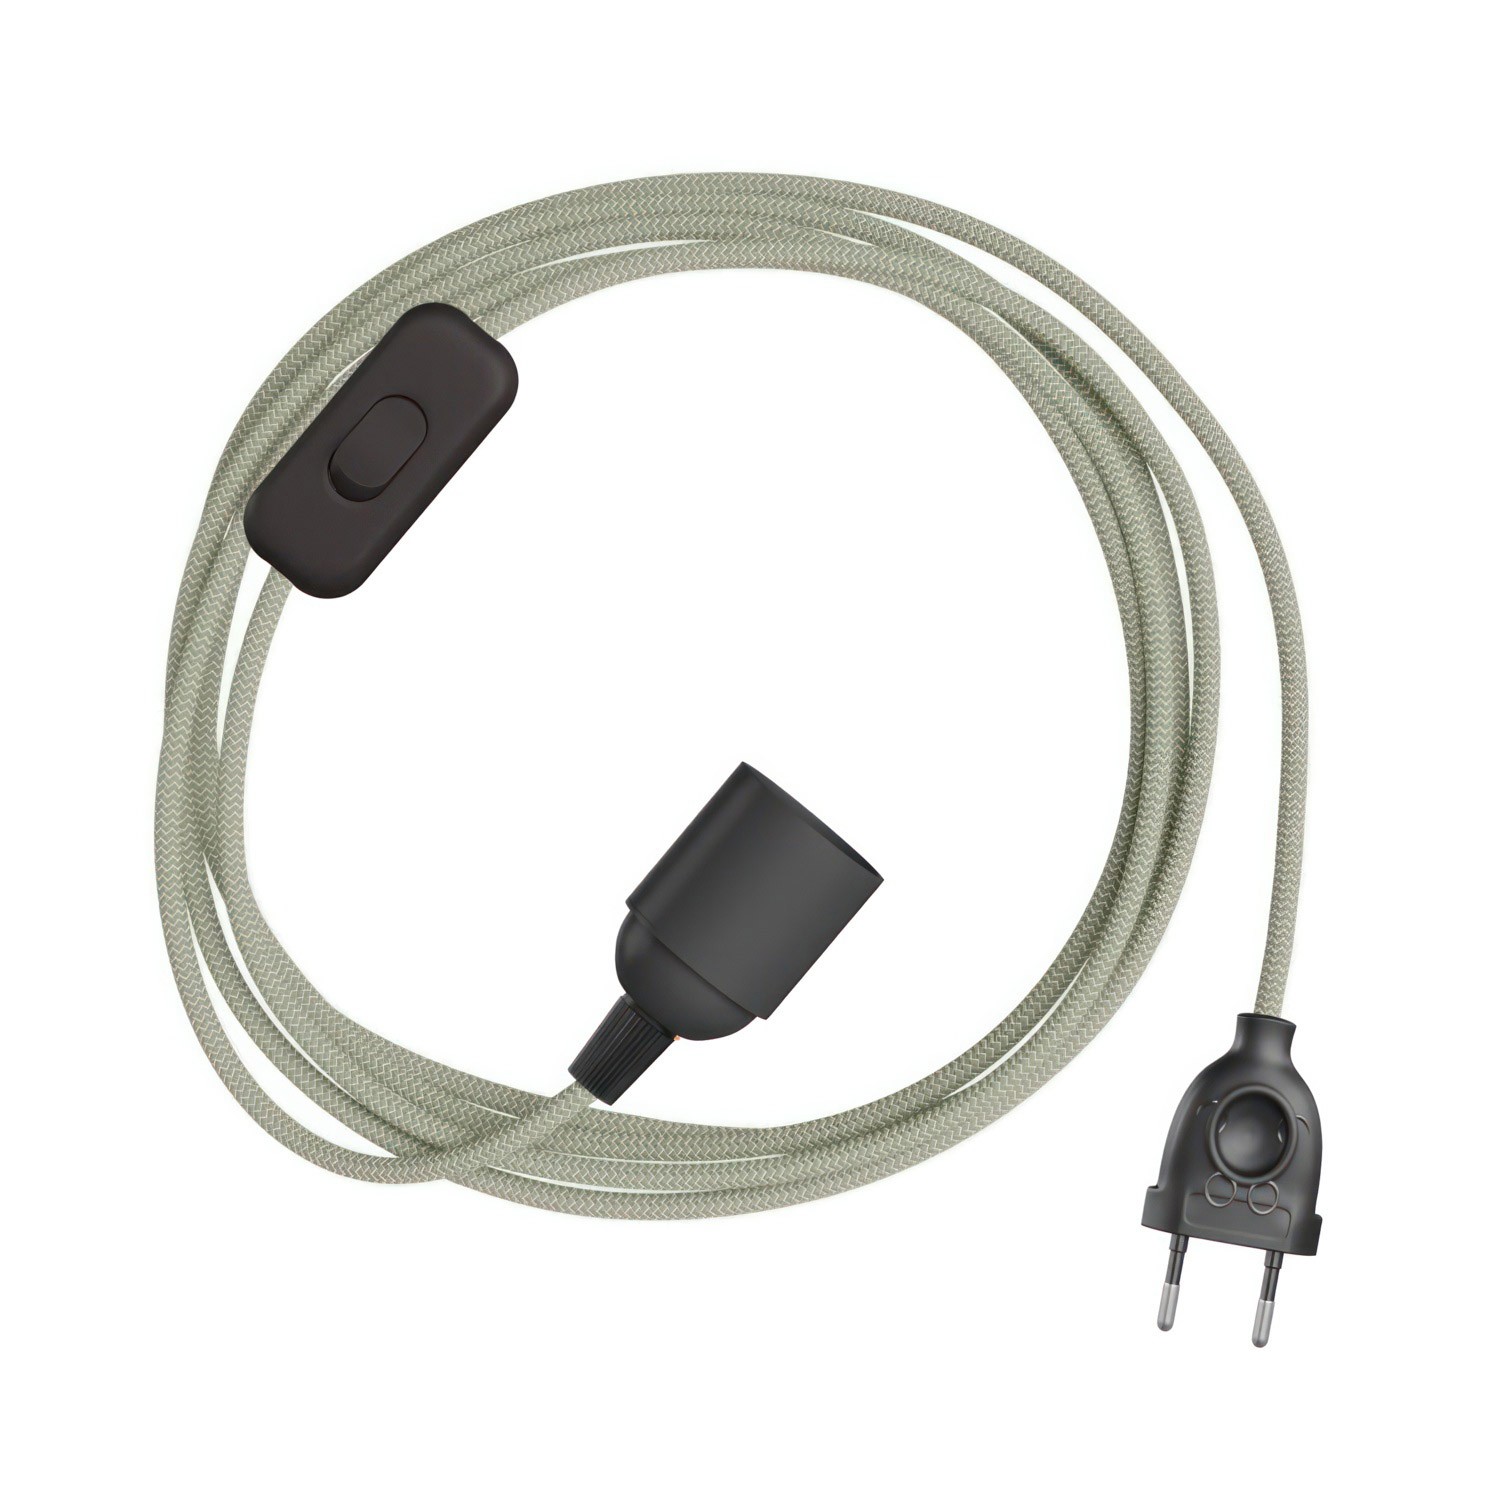 SnakeBis Zig-Zag - ožičenje s držačem svjetiljke i tekstilnim kabelom s Zig-Zag efektom